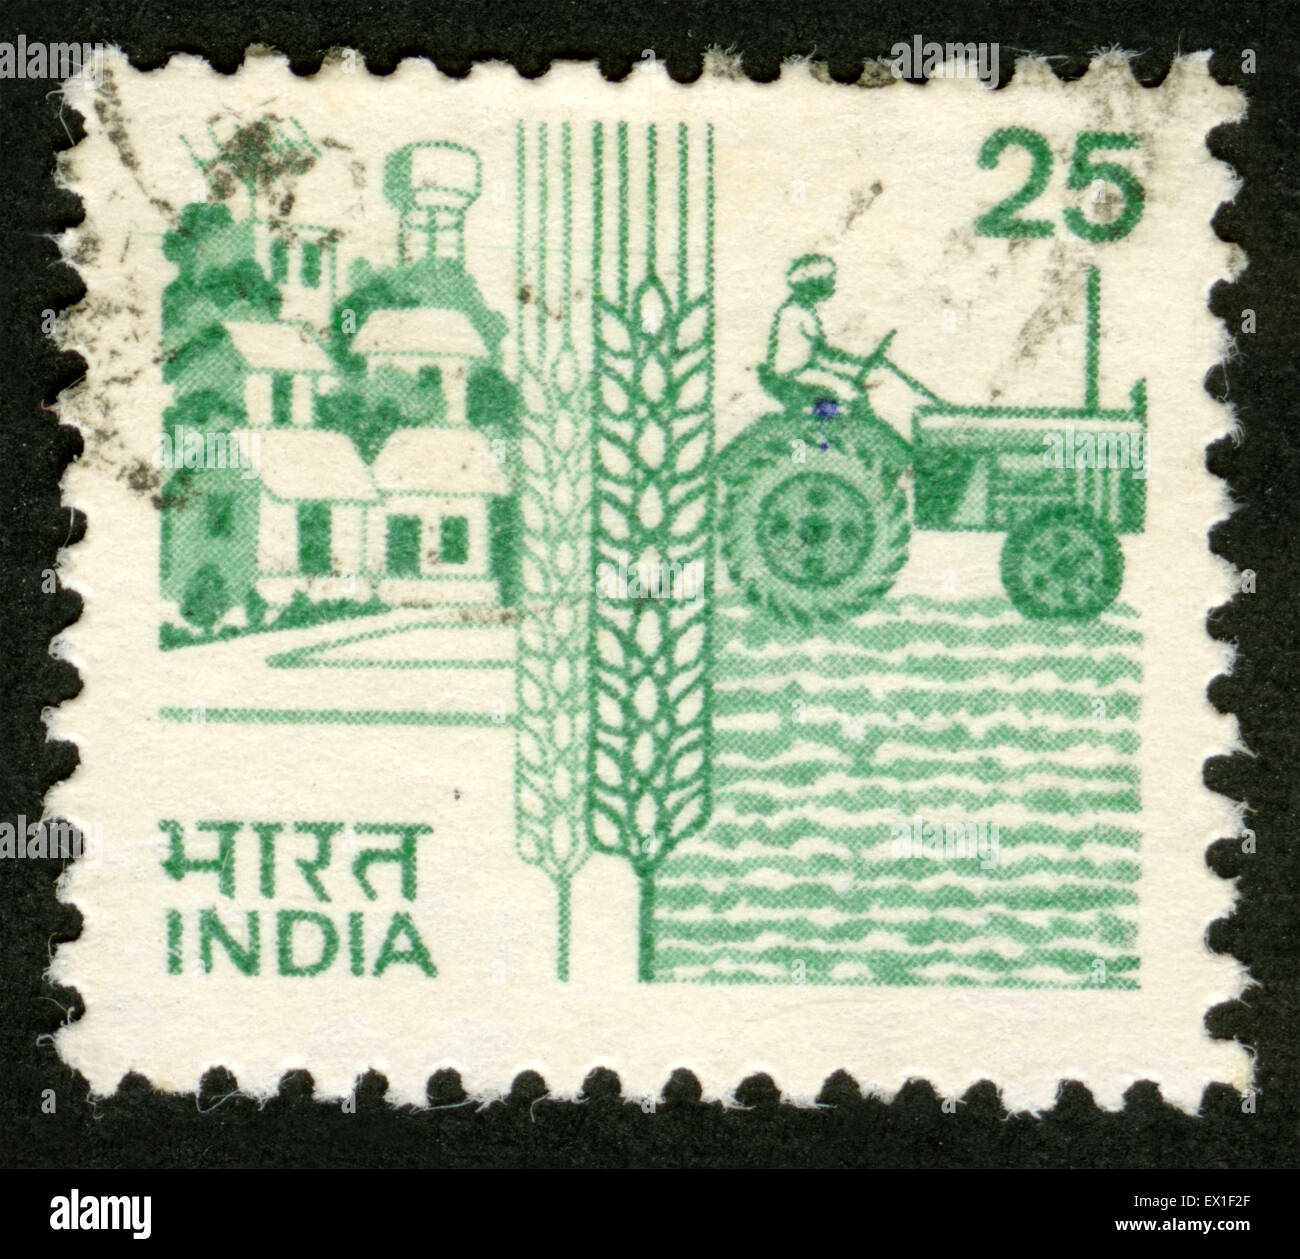 La India, la agricultura, el franqueo, sello Foto de stock